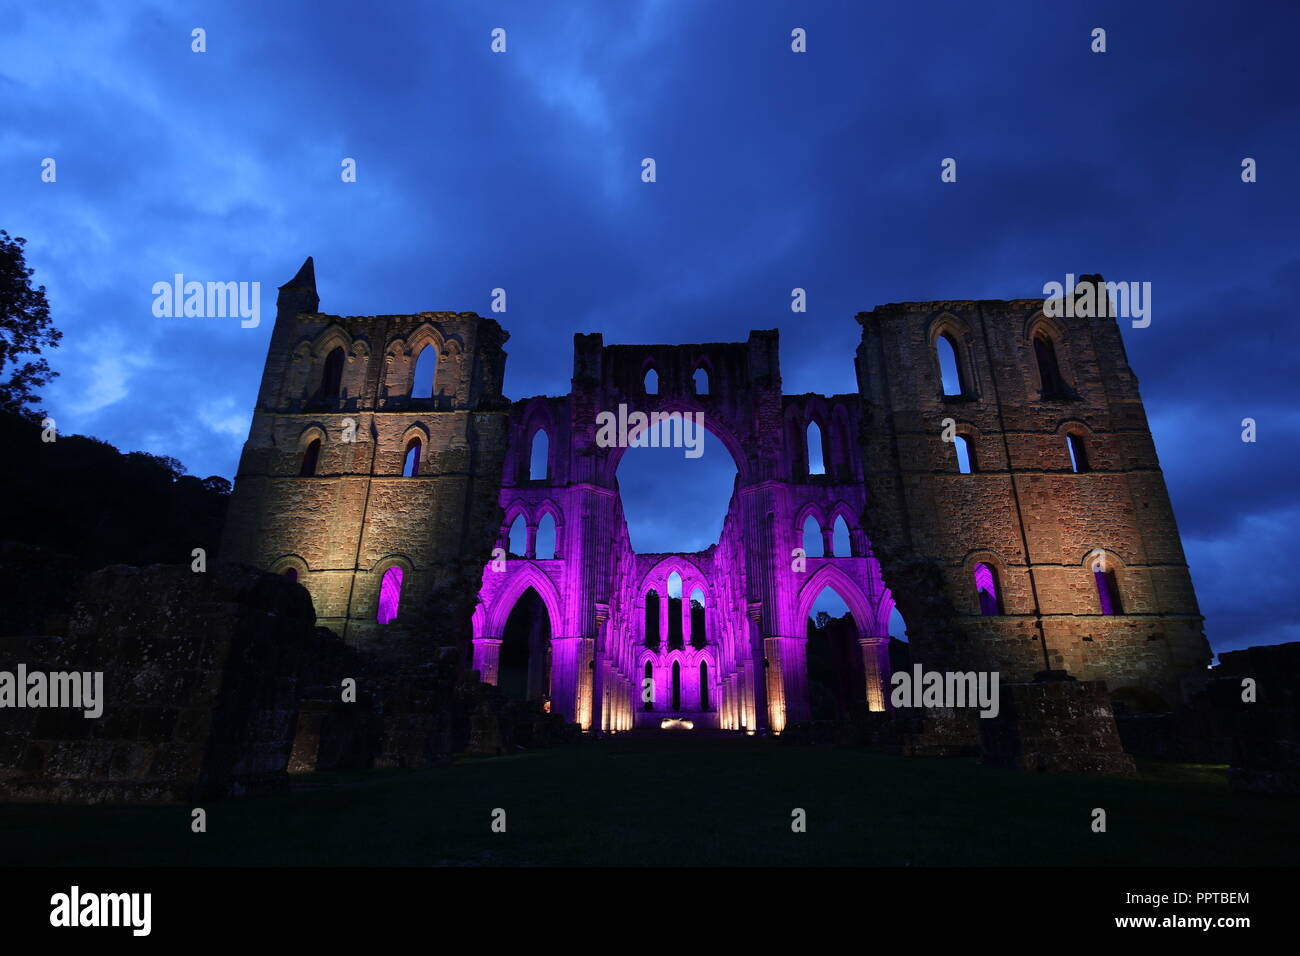 Rievaulx Abbey gebadet in farbiges Licht vor der leuchtenden Rievaulx, drei Nacht Licht und Installation am 11. sound Abtei Ruinen in North Yorkshire. Stockfoto